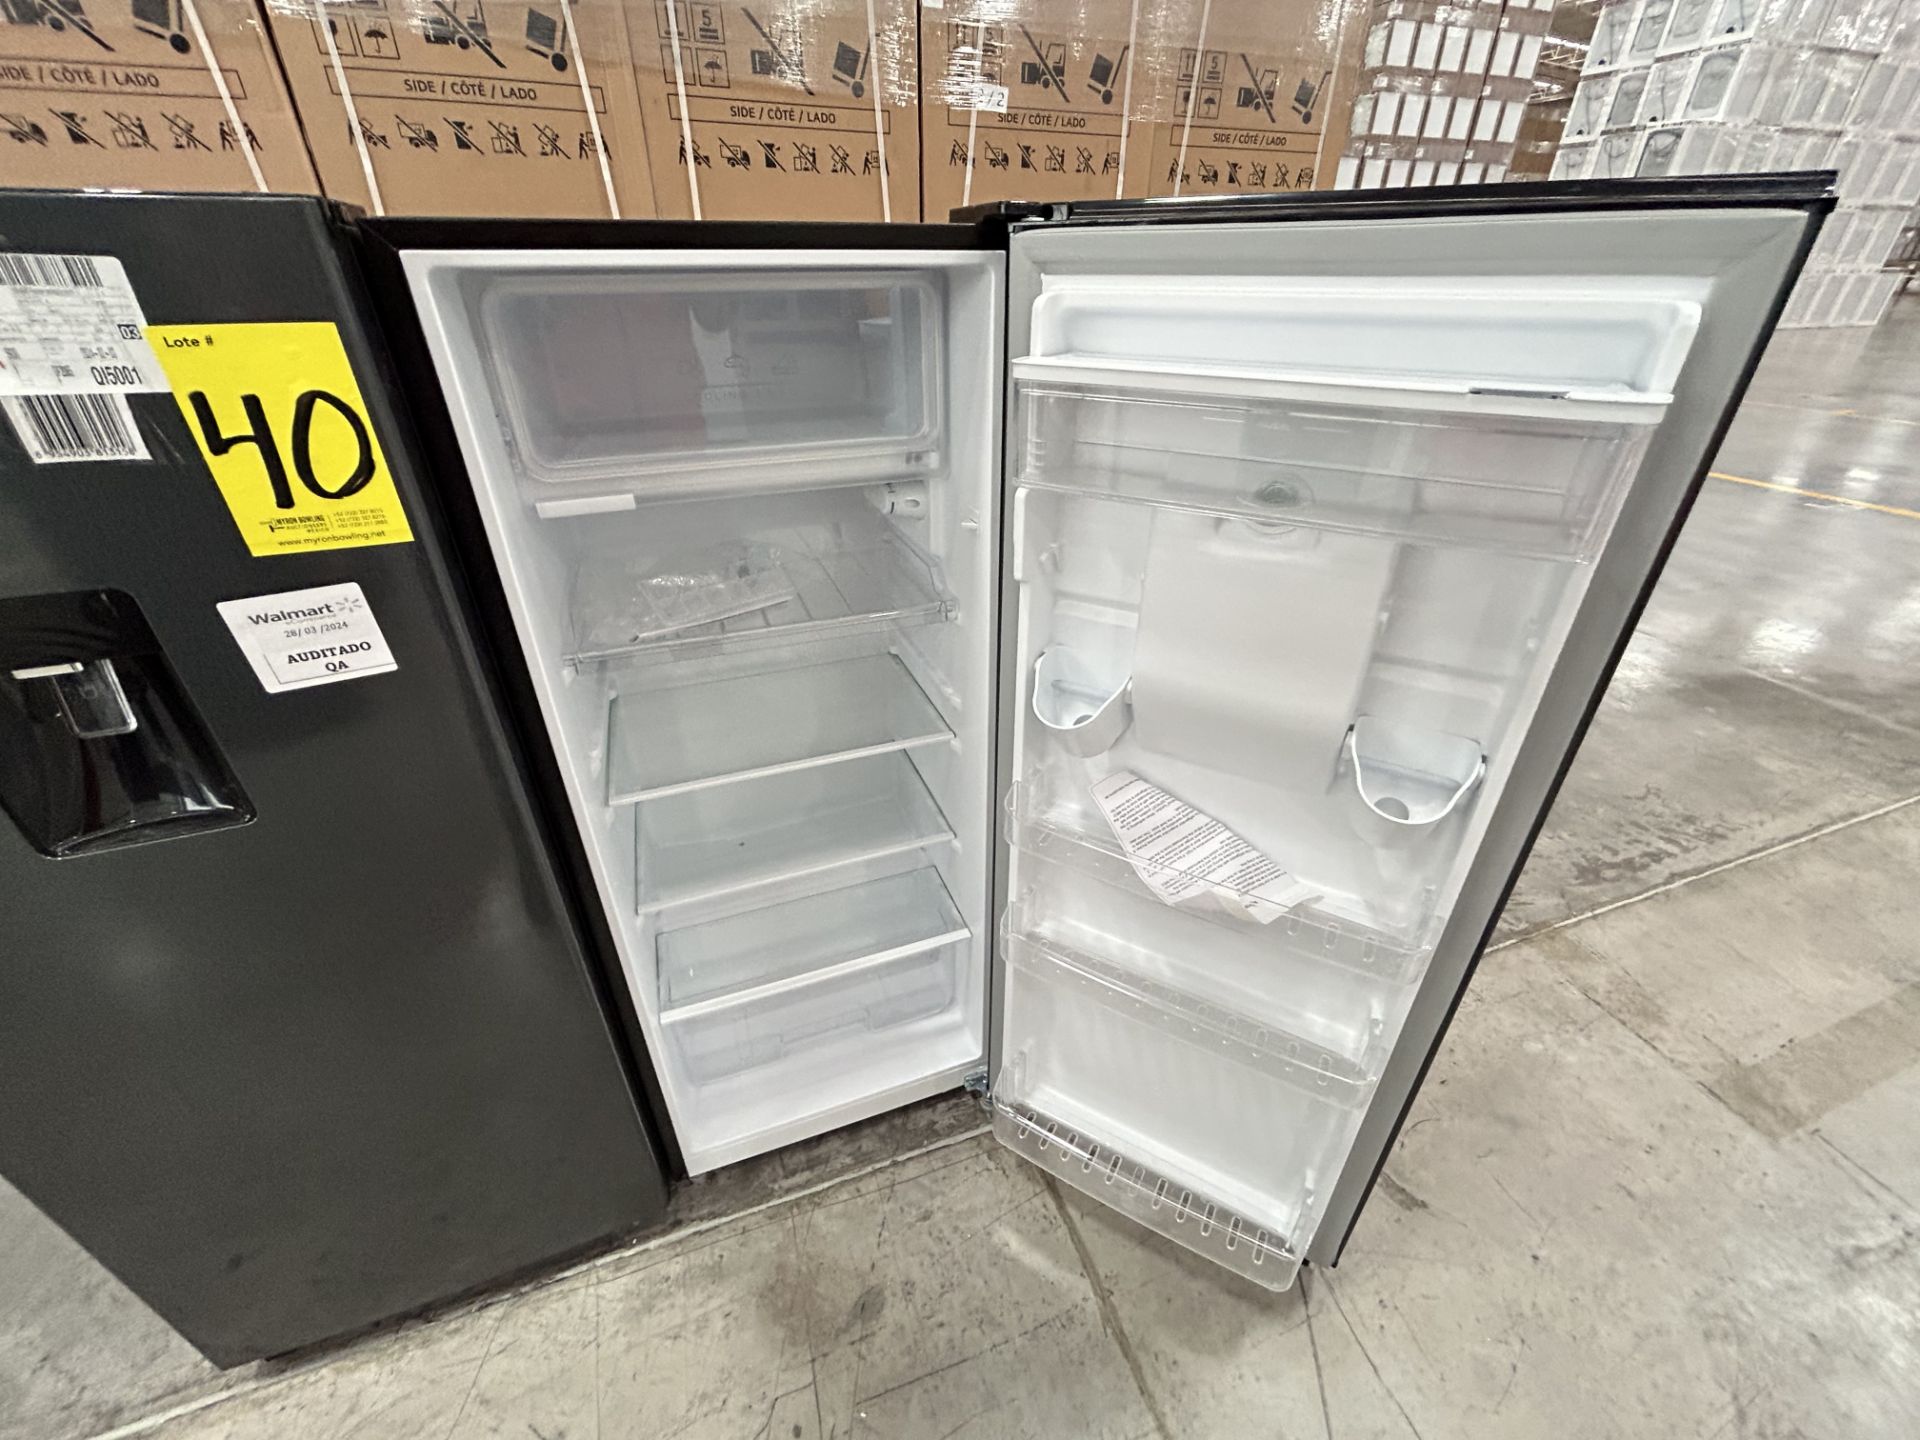 Lote de 2 Refrigeradores, Contiene: 1 Refrigerador con dispensador de agua Marca ATVIO, Modelo AT6. - Image 4 of 12